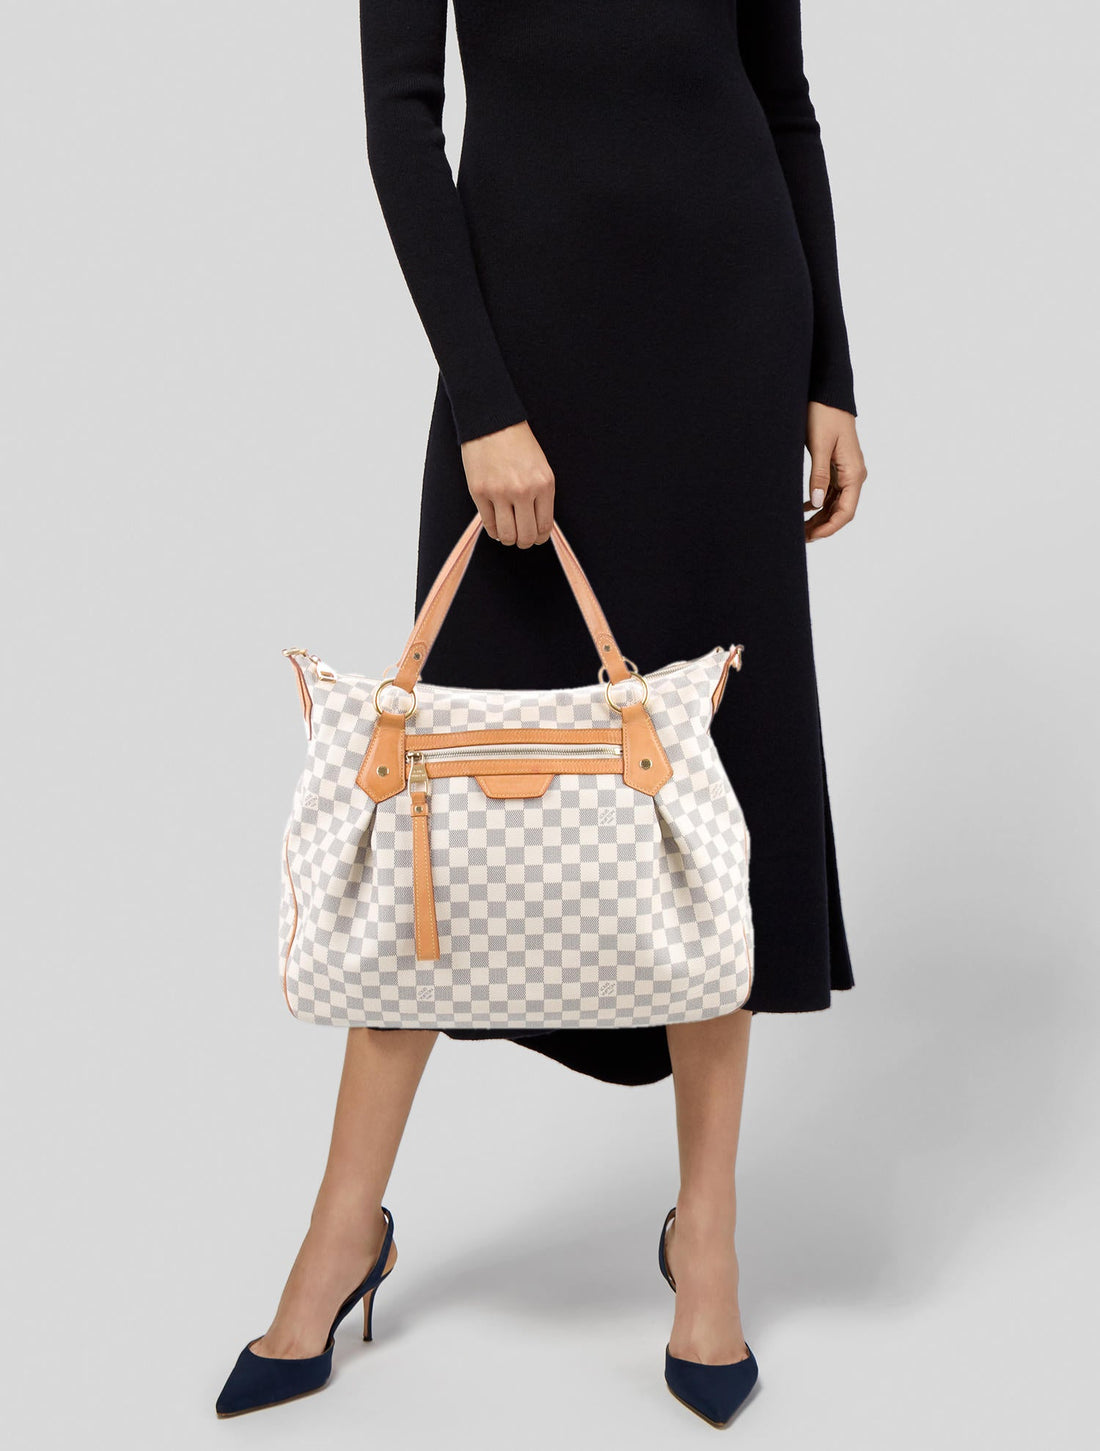 Louis Vuitton Damier Azur Evola 2-Way Shoulder Bag